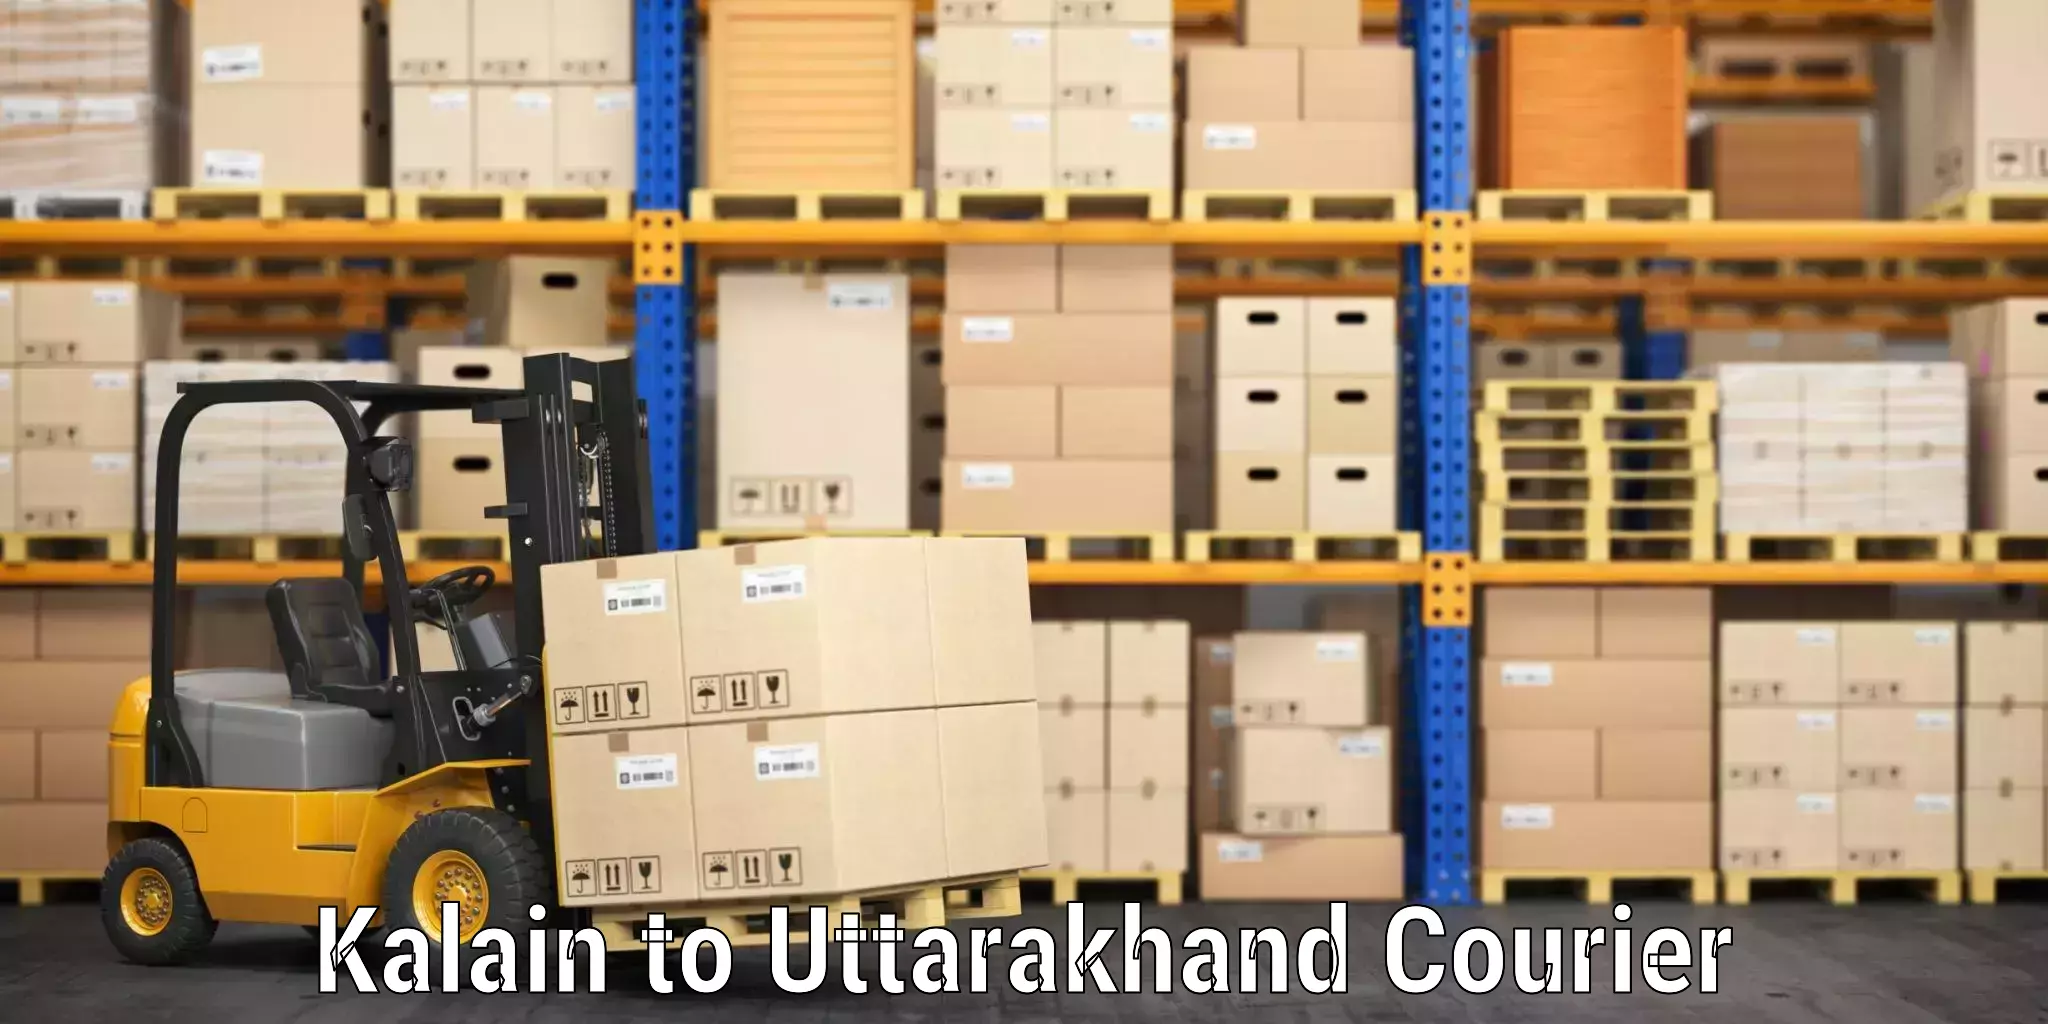 Urgent luggage shipment Kalain to Uttarakhand